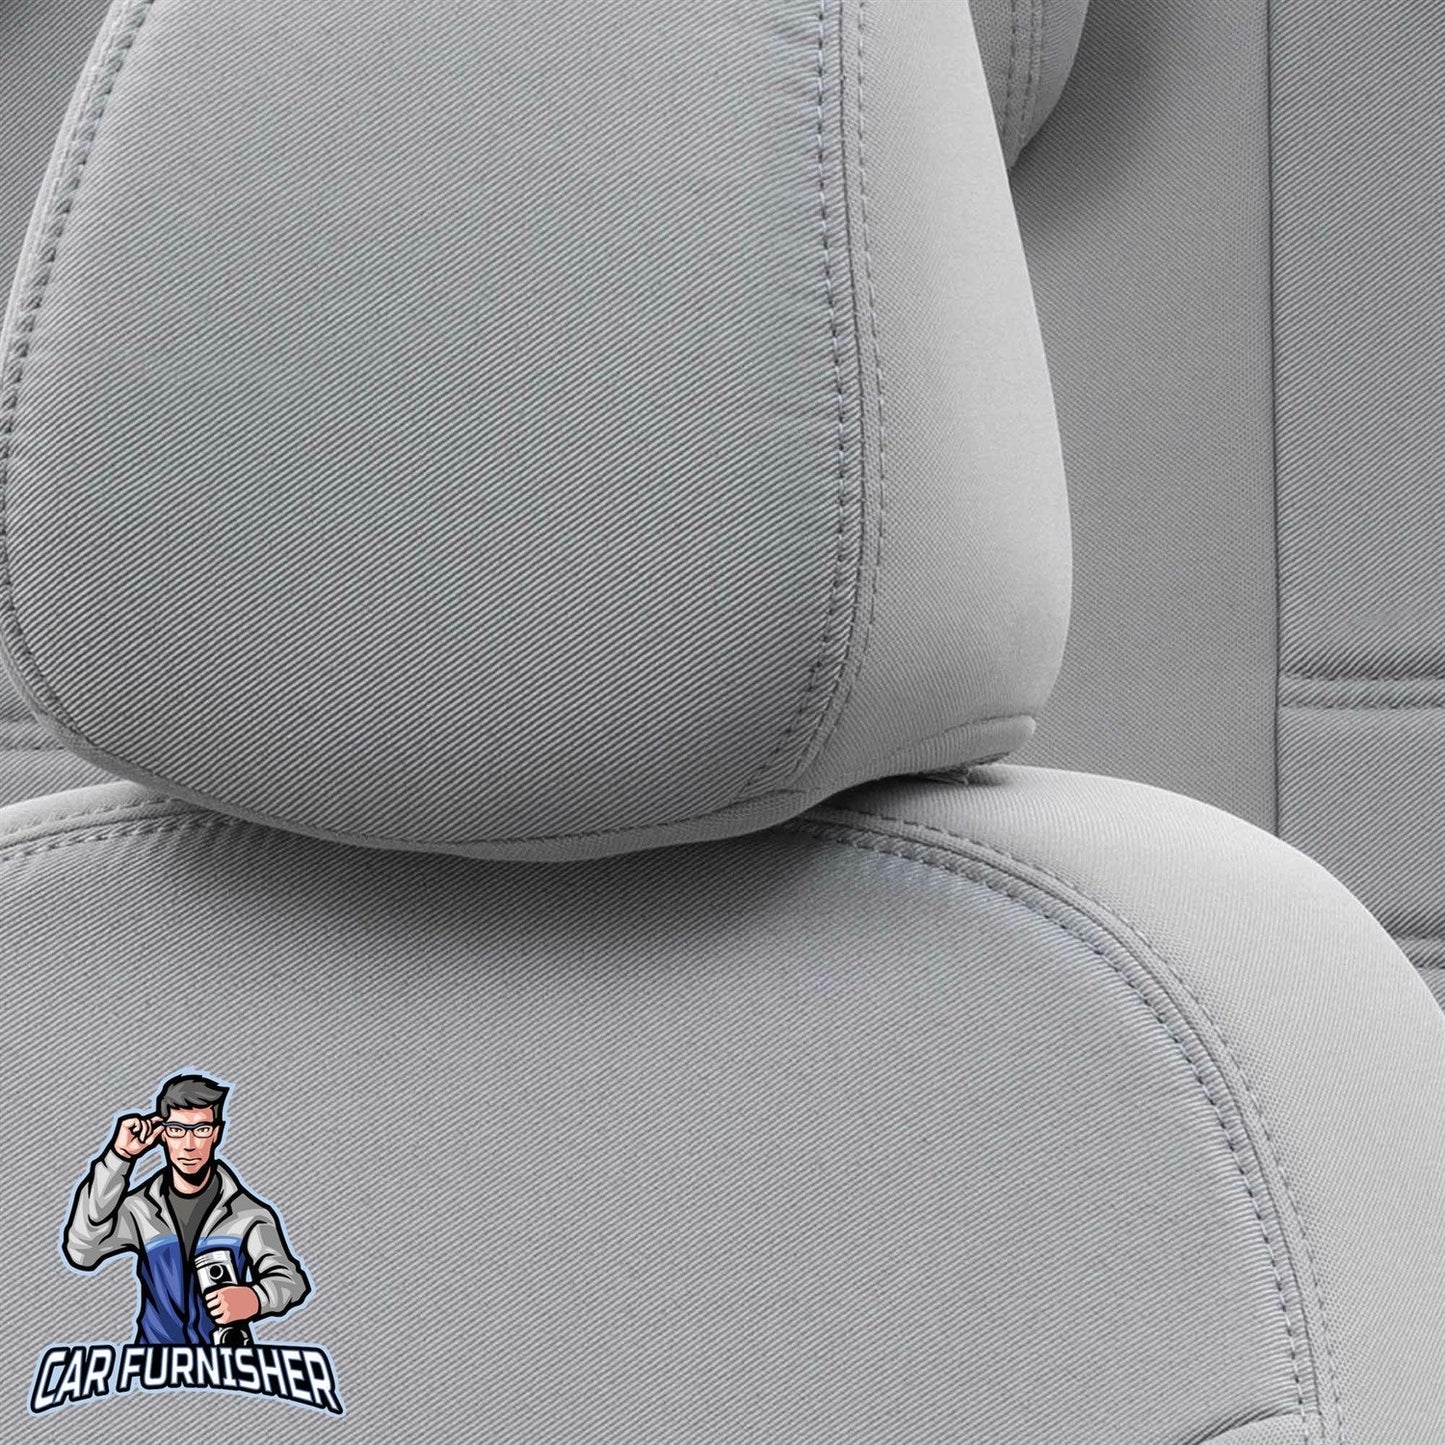 Volvo FH Seat Cover Original Jacquard Design Light Gray Jacquard Fabric